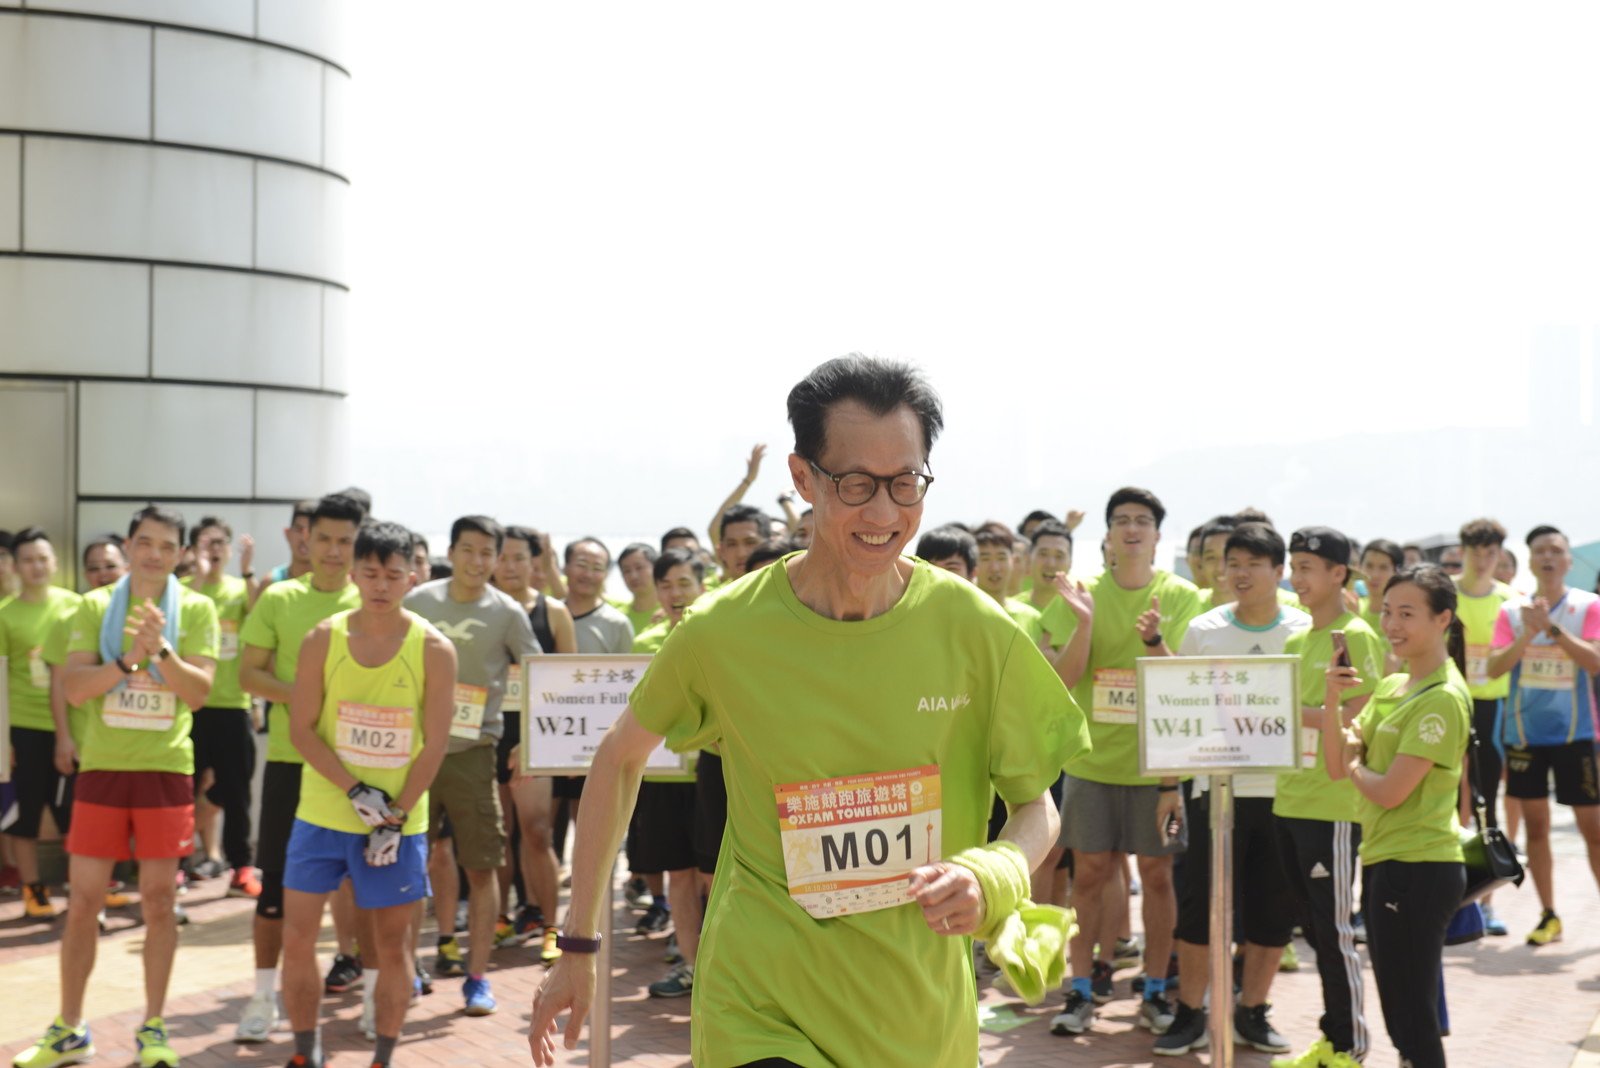 友邦保险(国际)有限公司澳门分行首席执行官马竹豪身体力行挑战全塔「个人竞跑」。